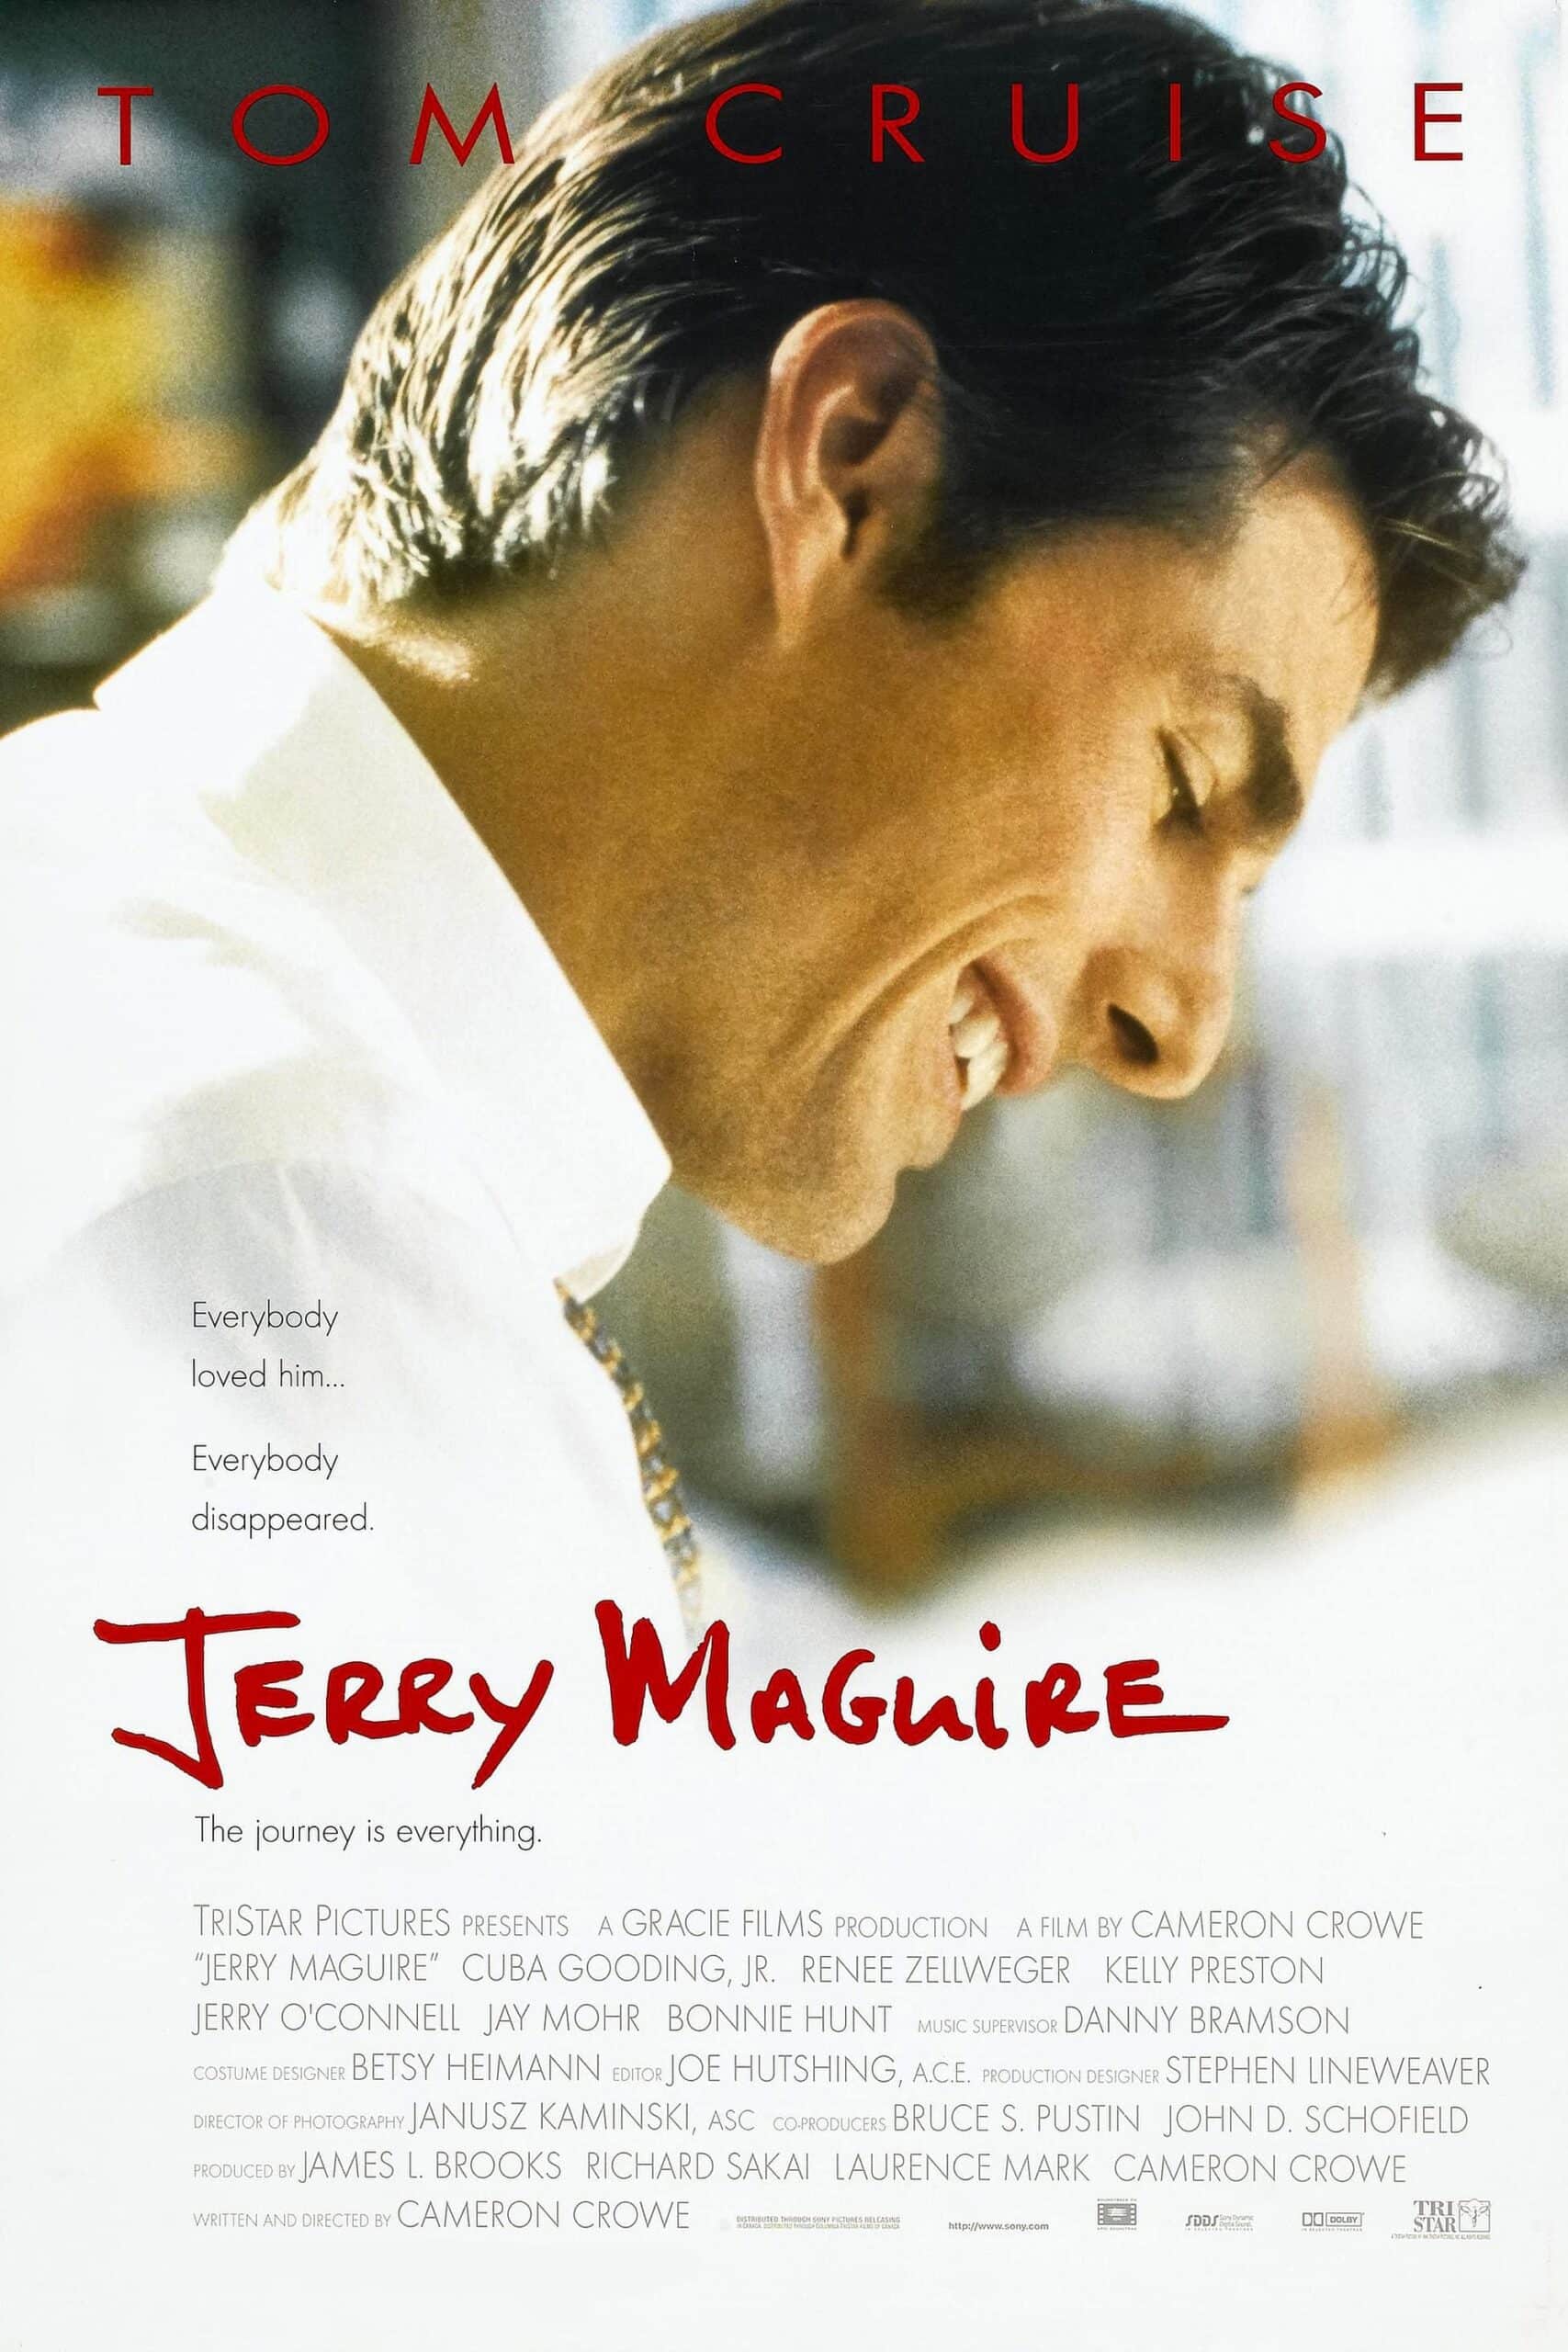 ดูหนังออนไลน์ฟรี Jerry Maguire 1996 เจอร์รี่ แม็คไกวร์ เทพบุตรรักติดดิน